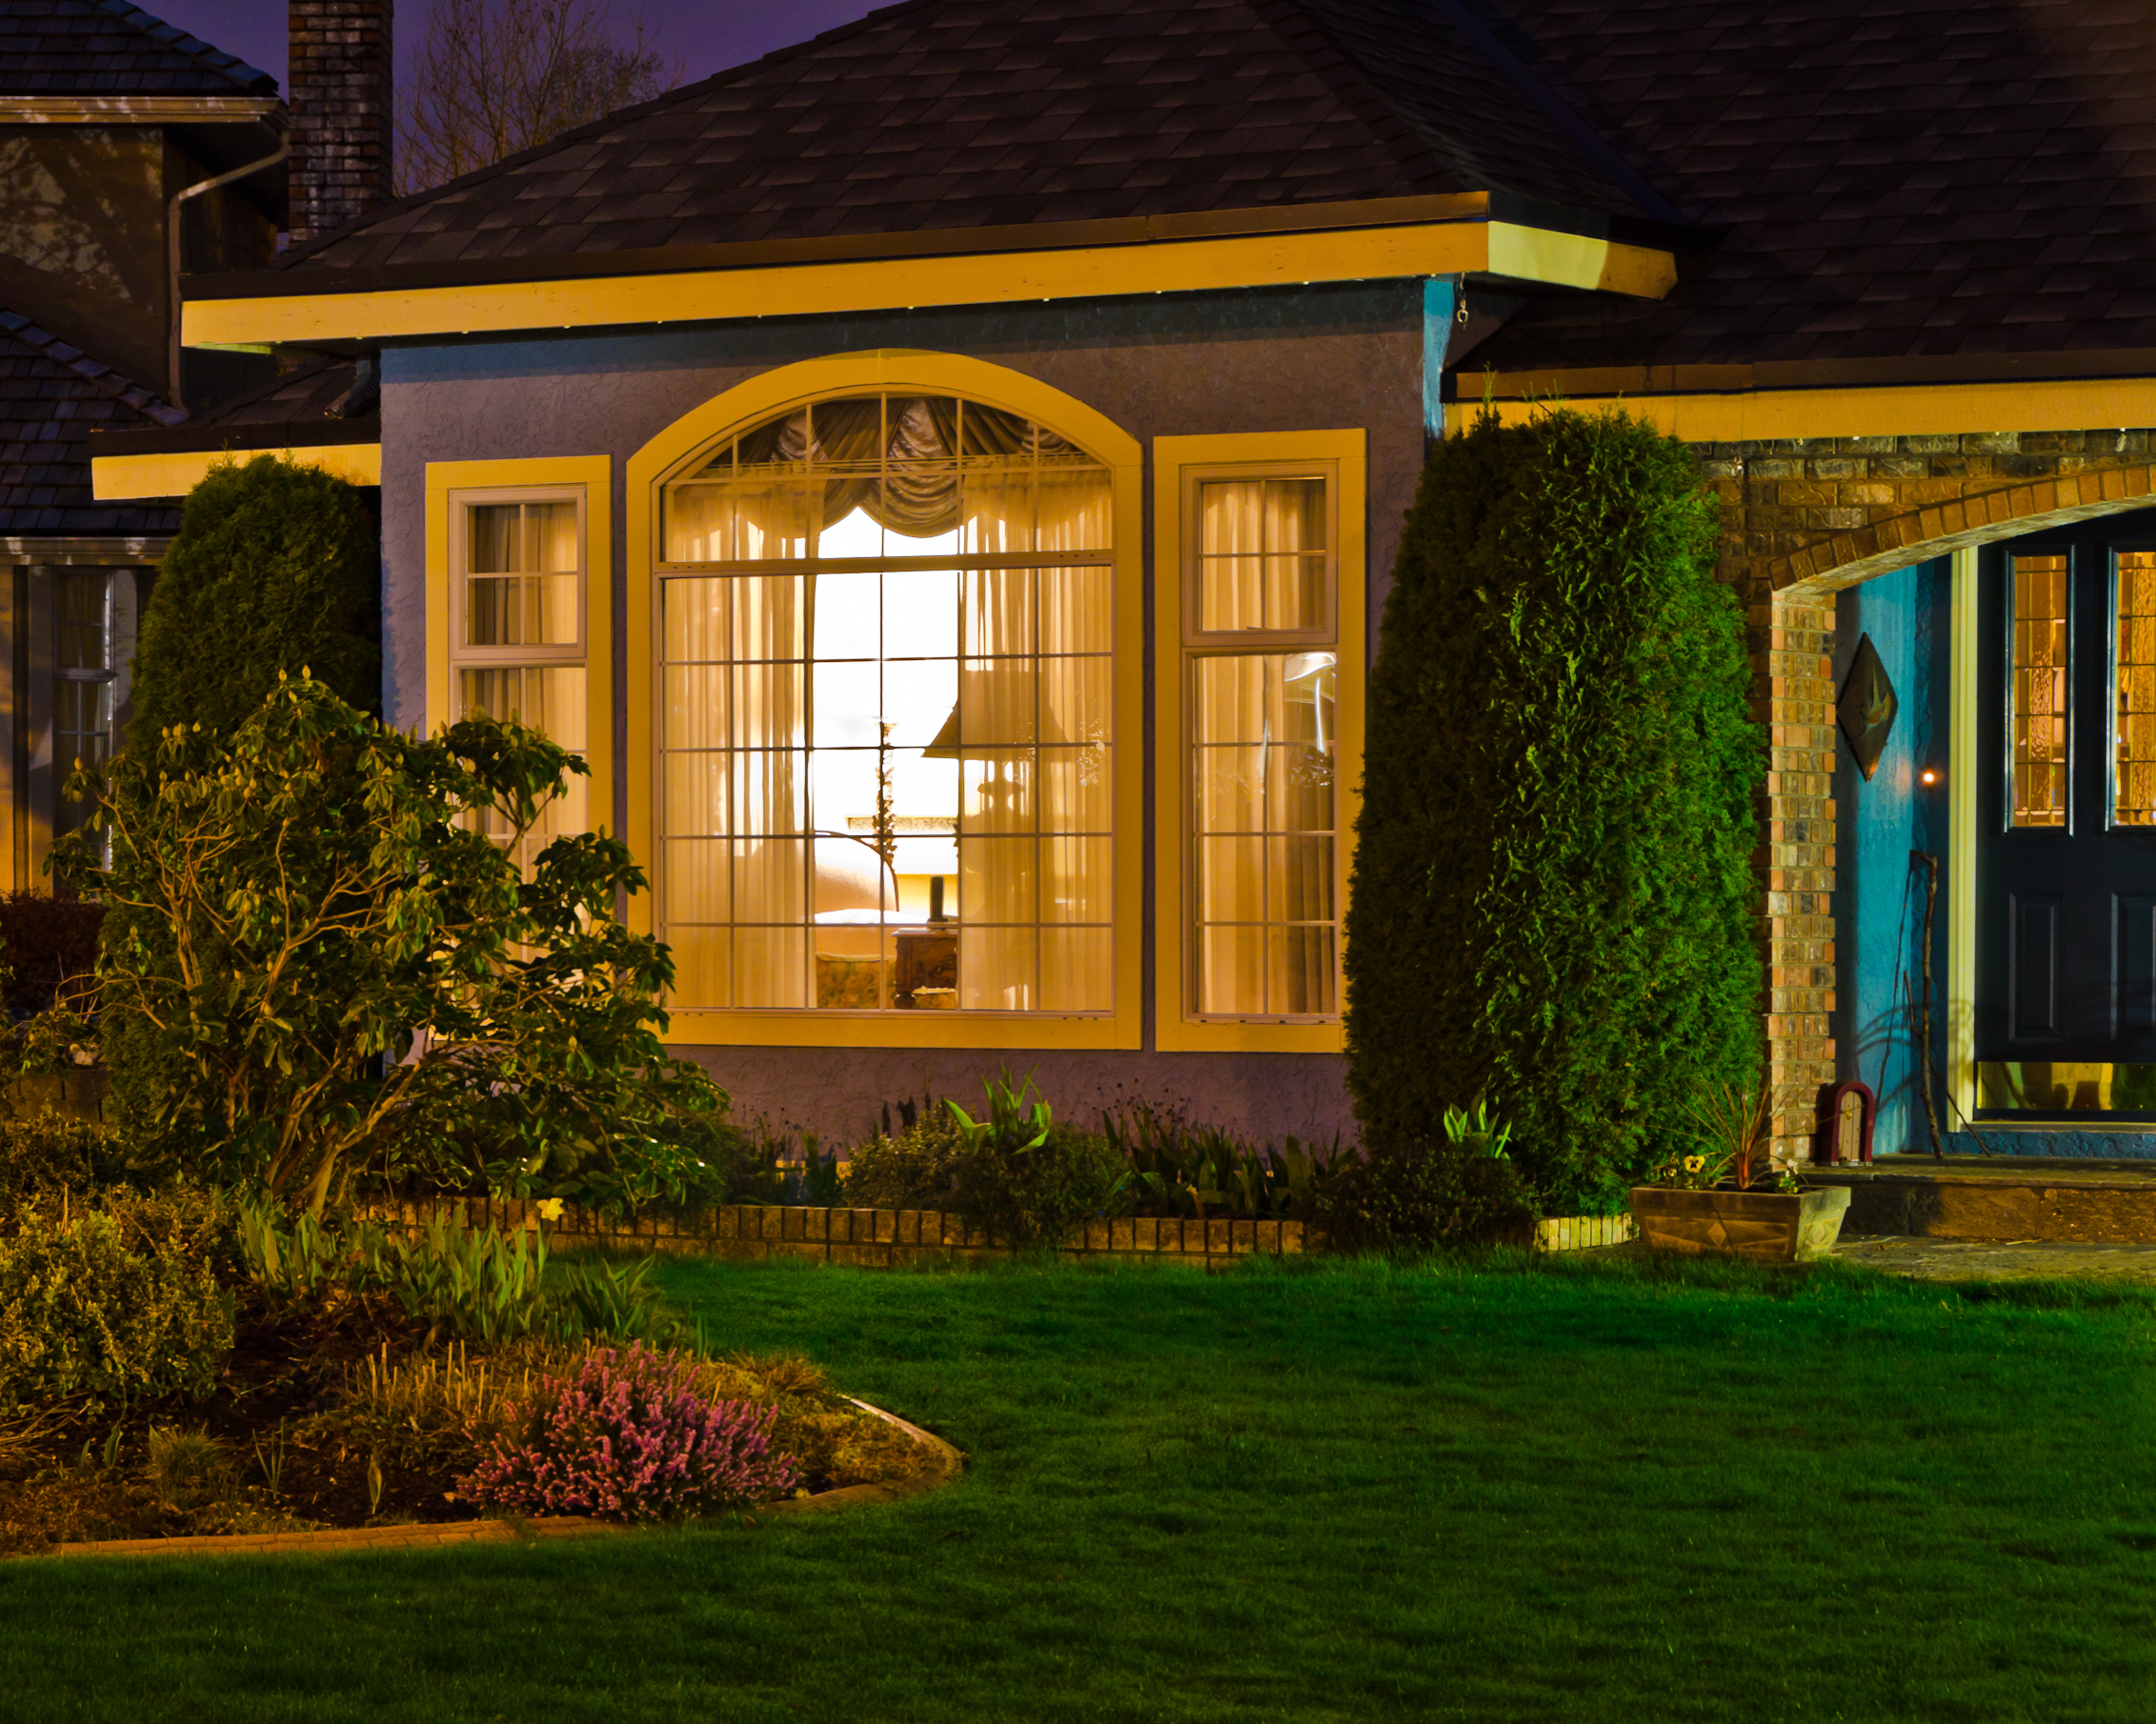 Entrada de una casa por la noche | Foto: Shutterstock